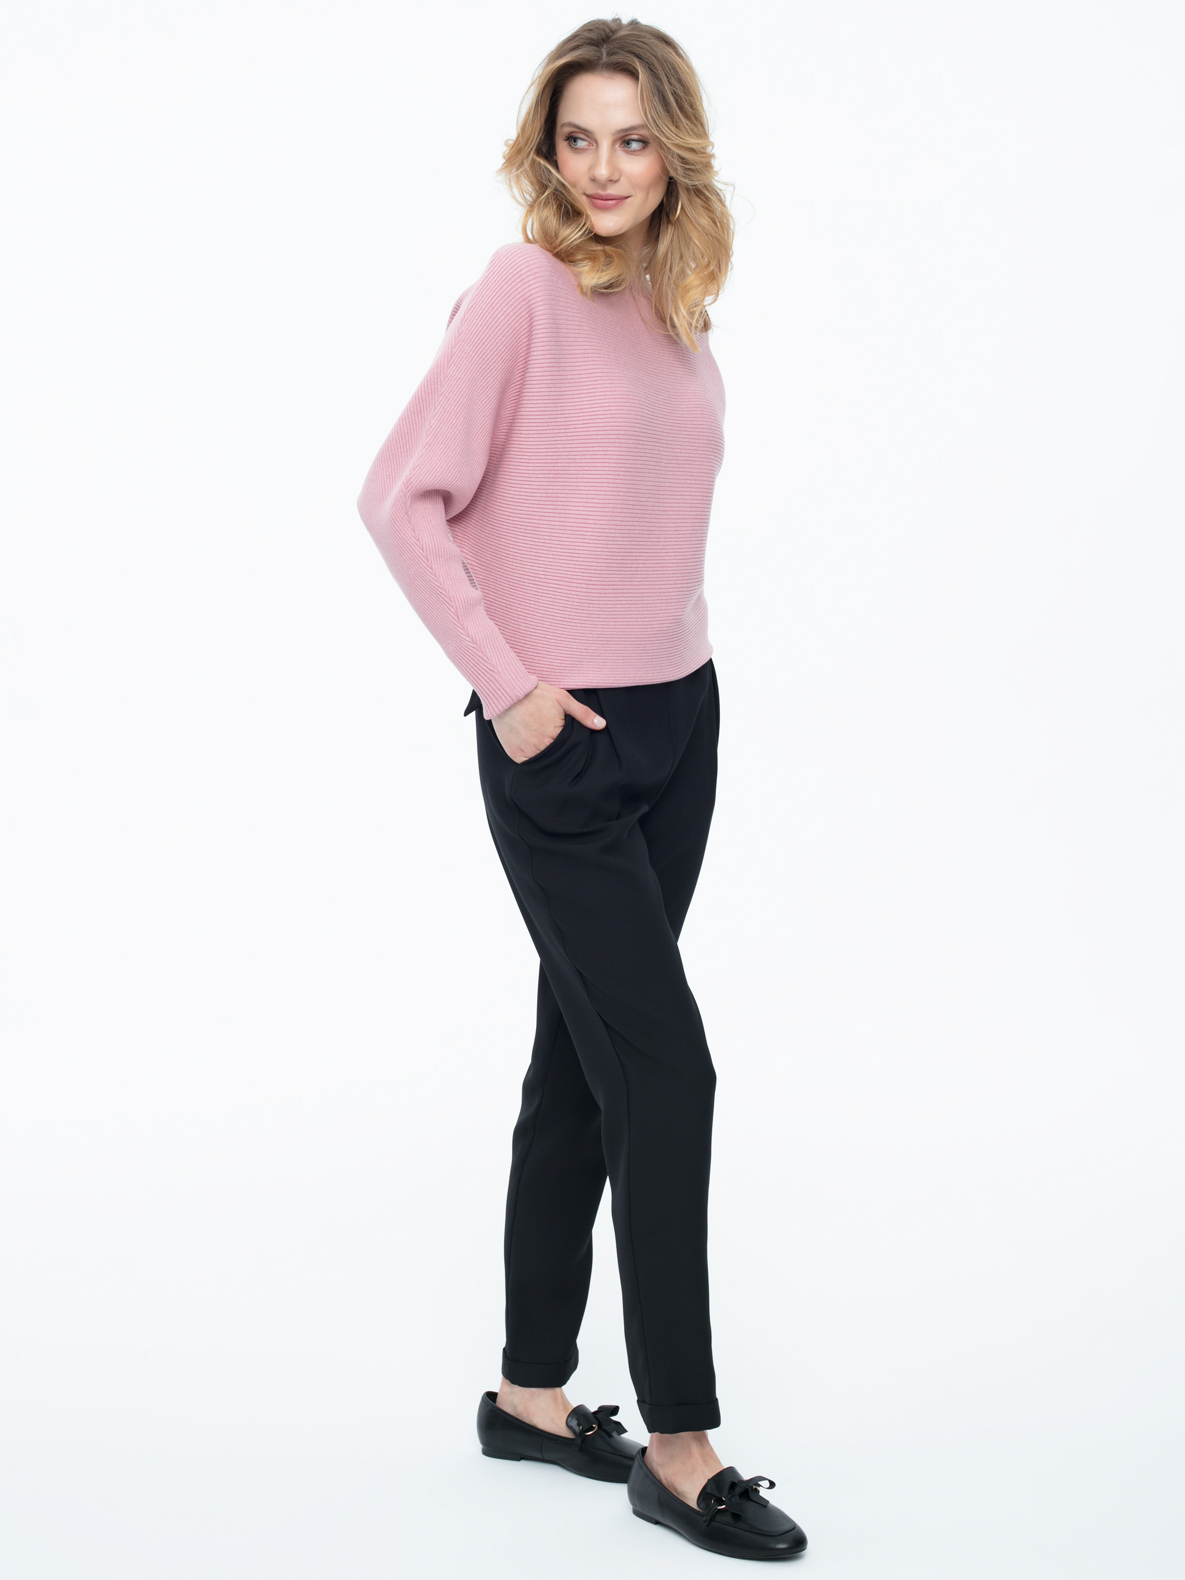 Sweater Klara pink